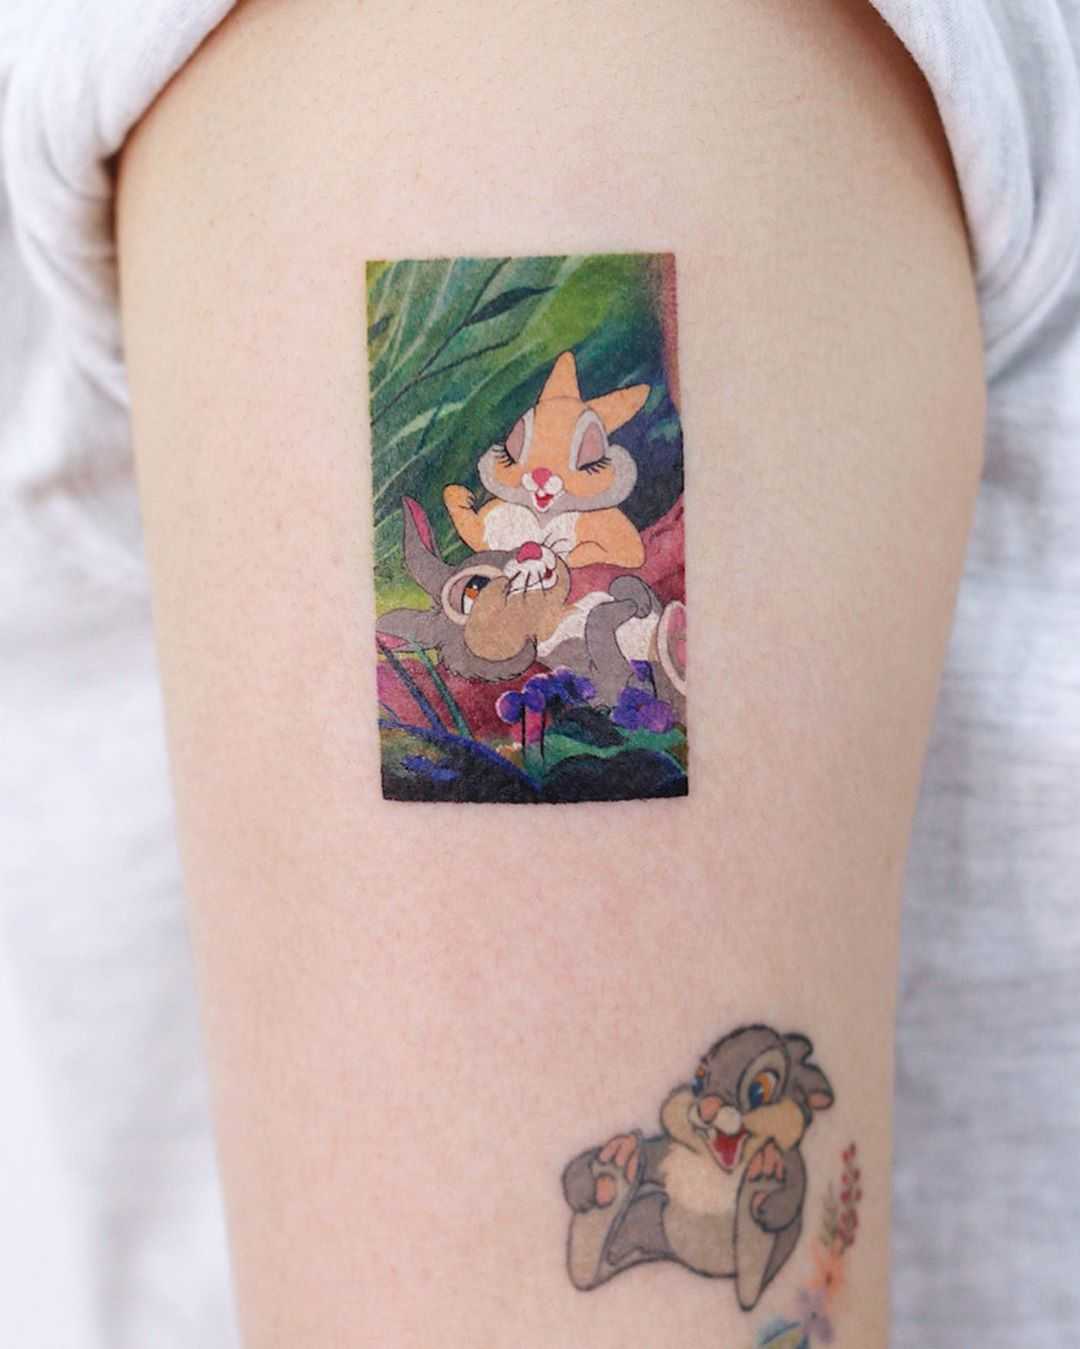 Thumper and Miss bunny tattoo by tattooist Saegeem